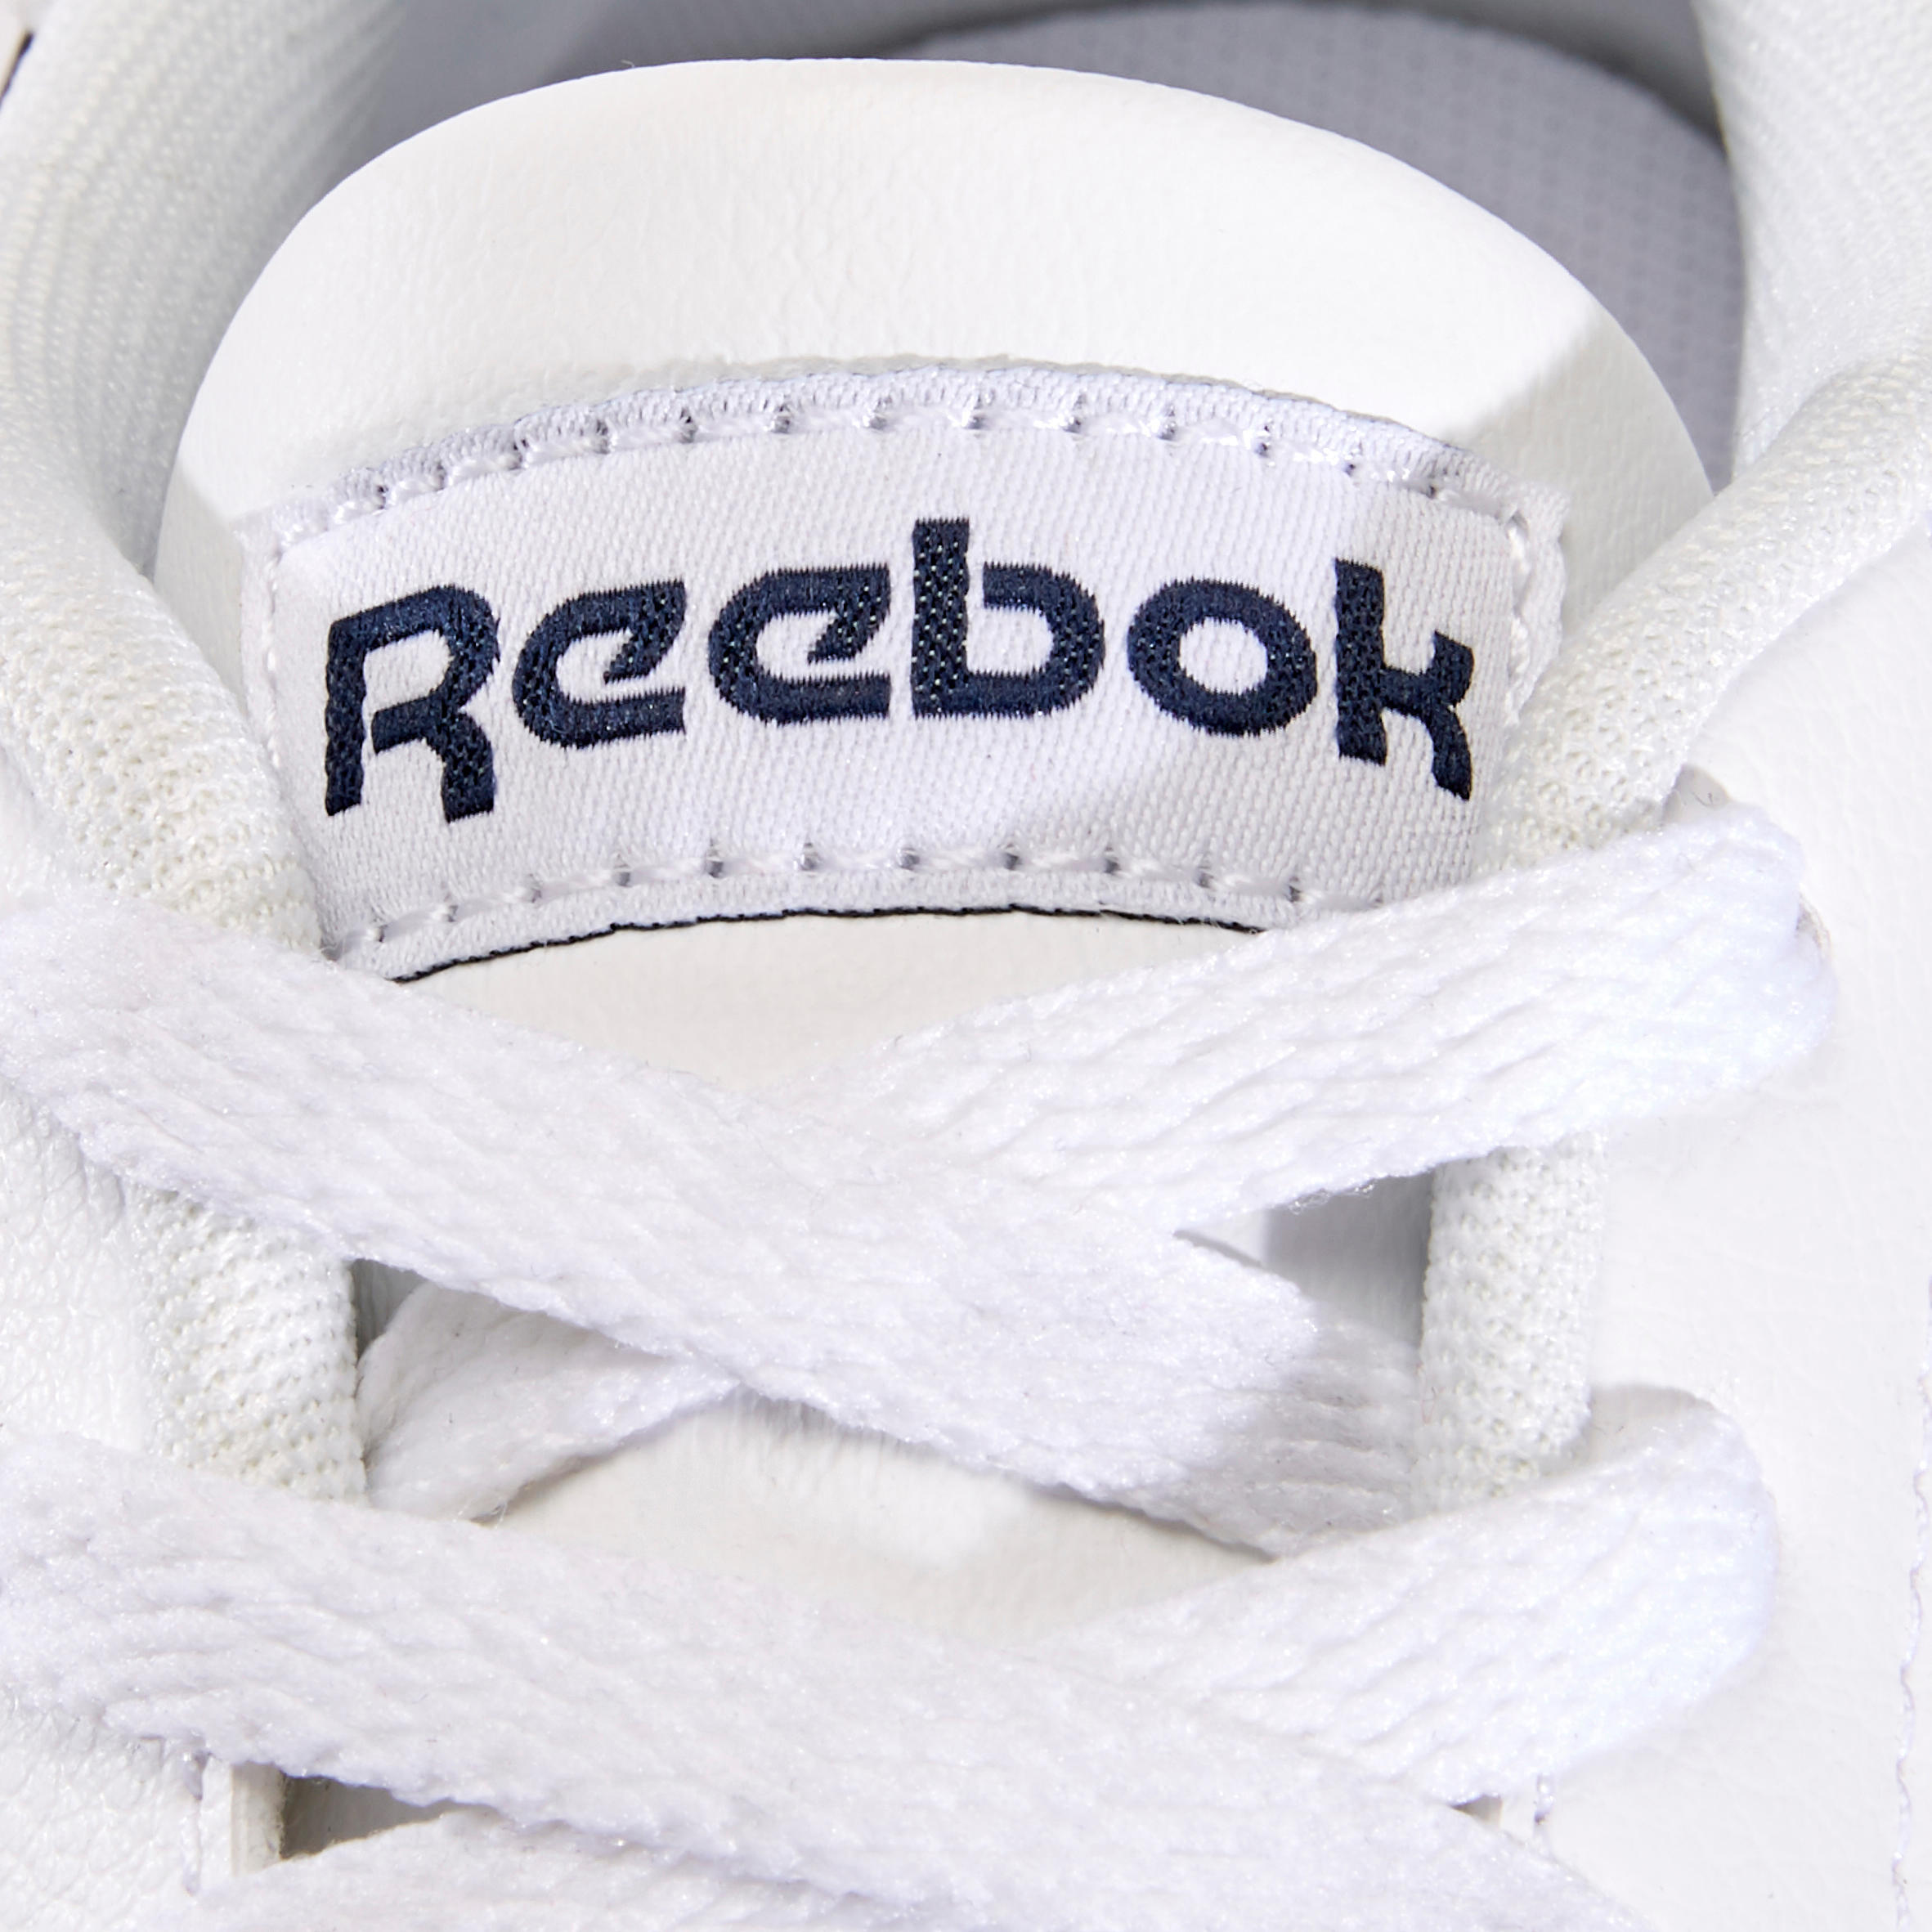 Men's Urban Walking Shoes Reebok Royal Classic - white 8/8